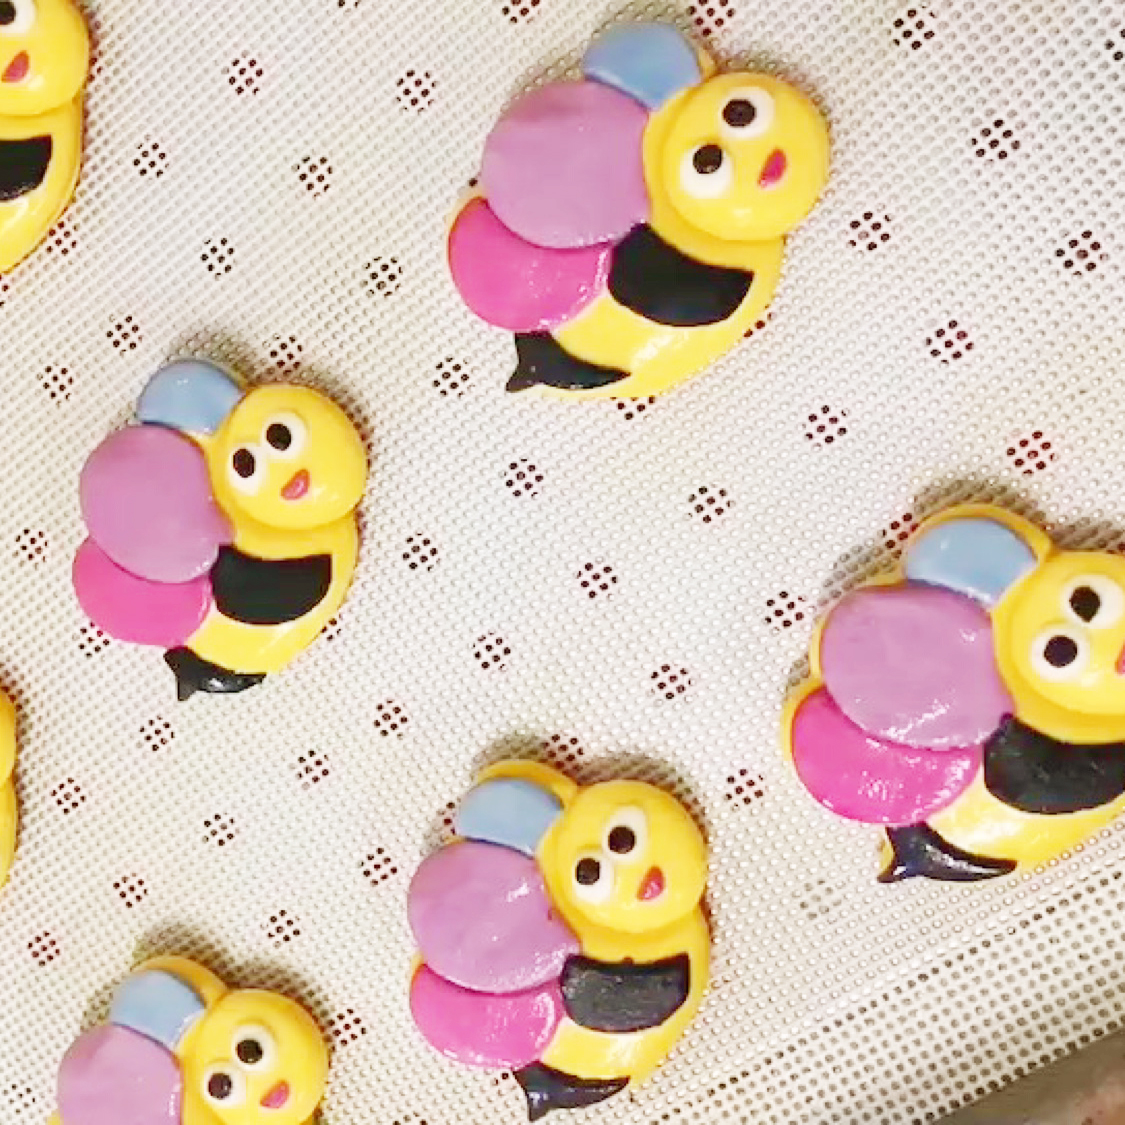 蜜蜂蜂巢卡通饼干模具蛋糕烘焙工具翻糖切模花样蒸馒头家用磨具3d